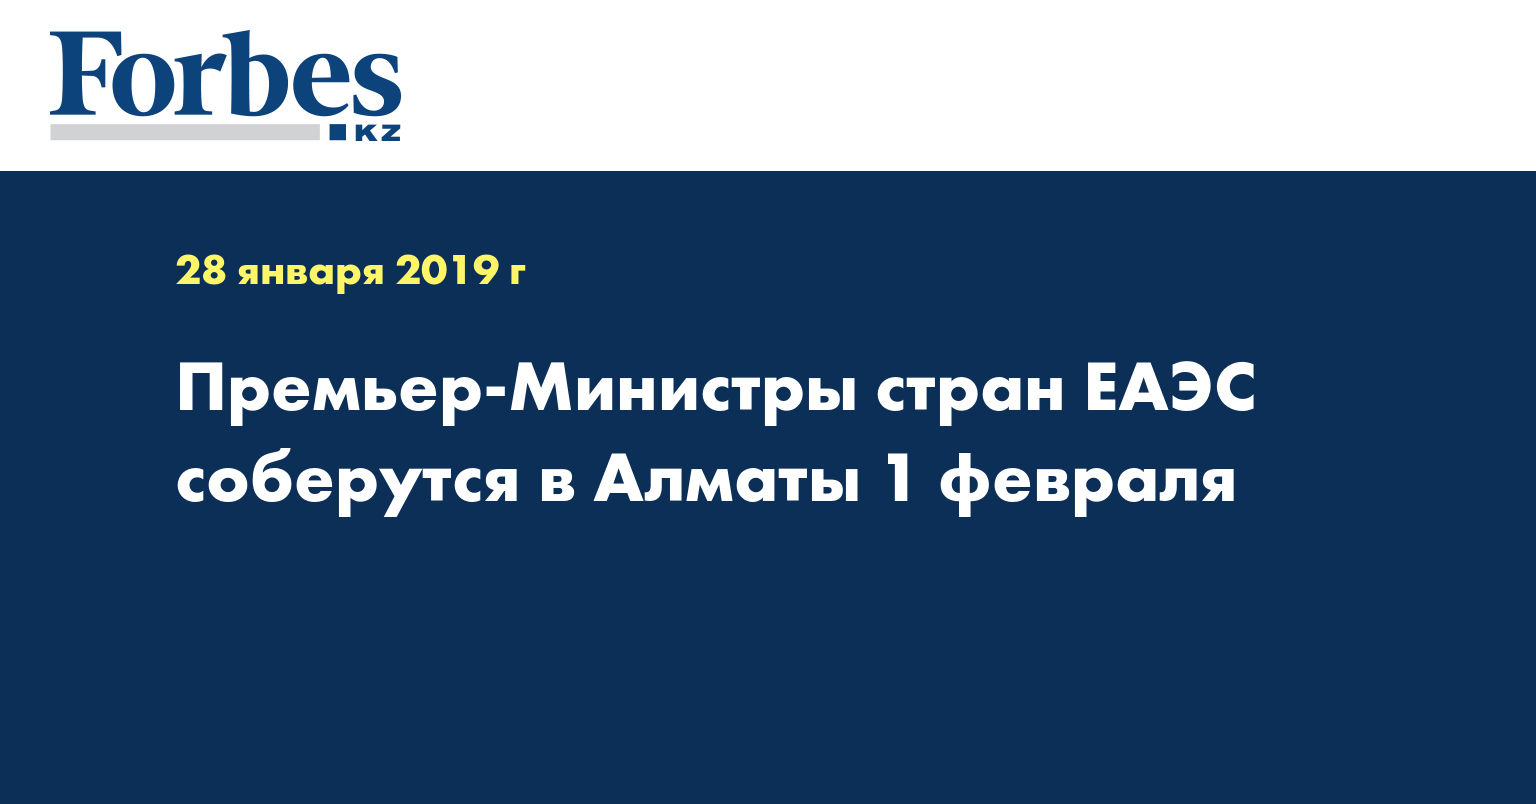  Премьер-министры cтран ЕАЭС соберутся в Алматы 1 февраля